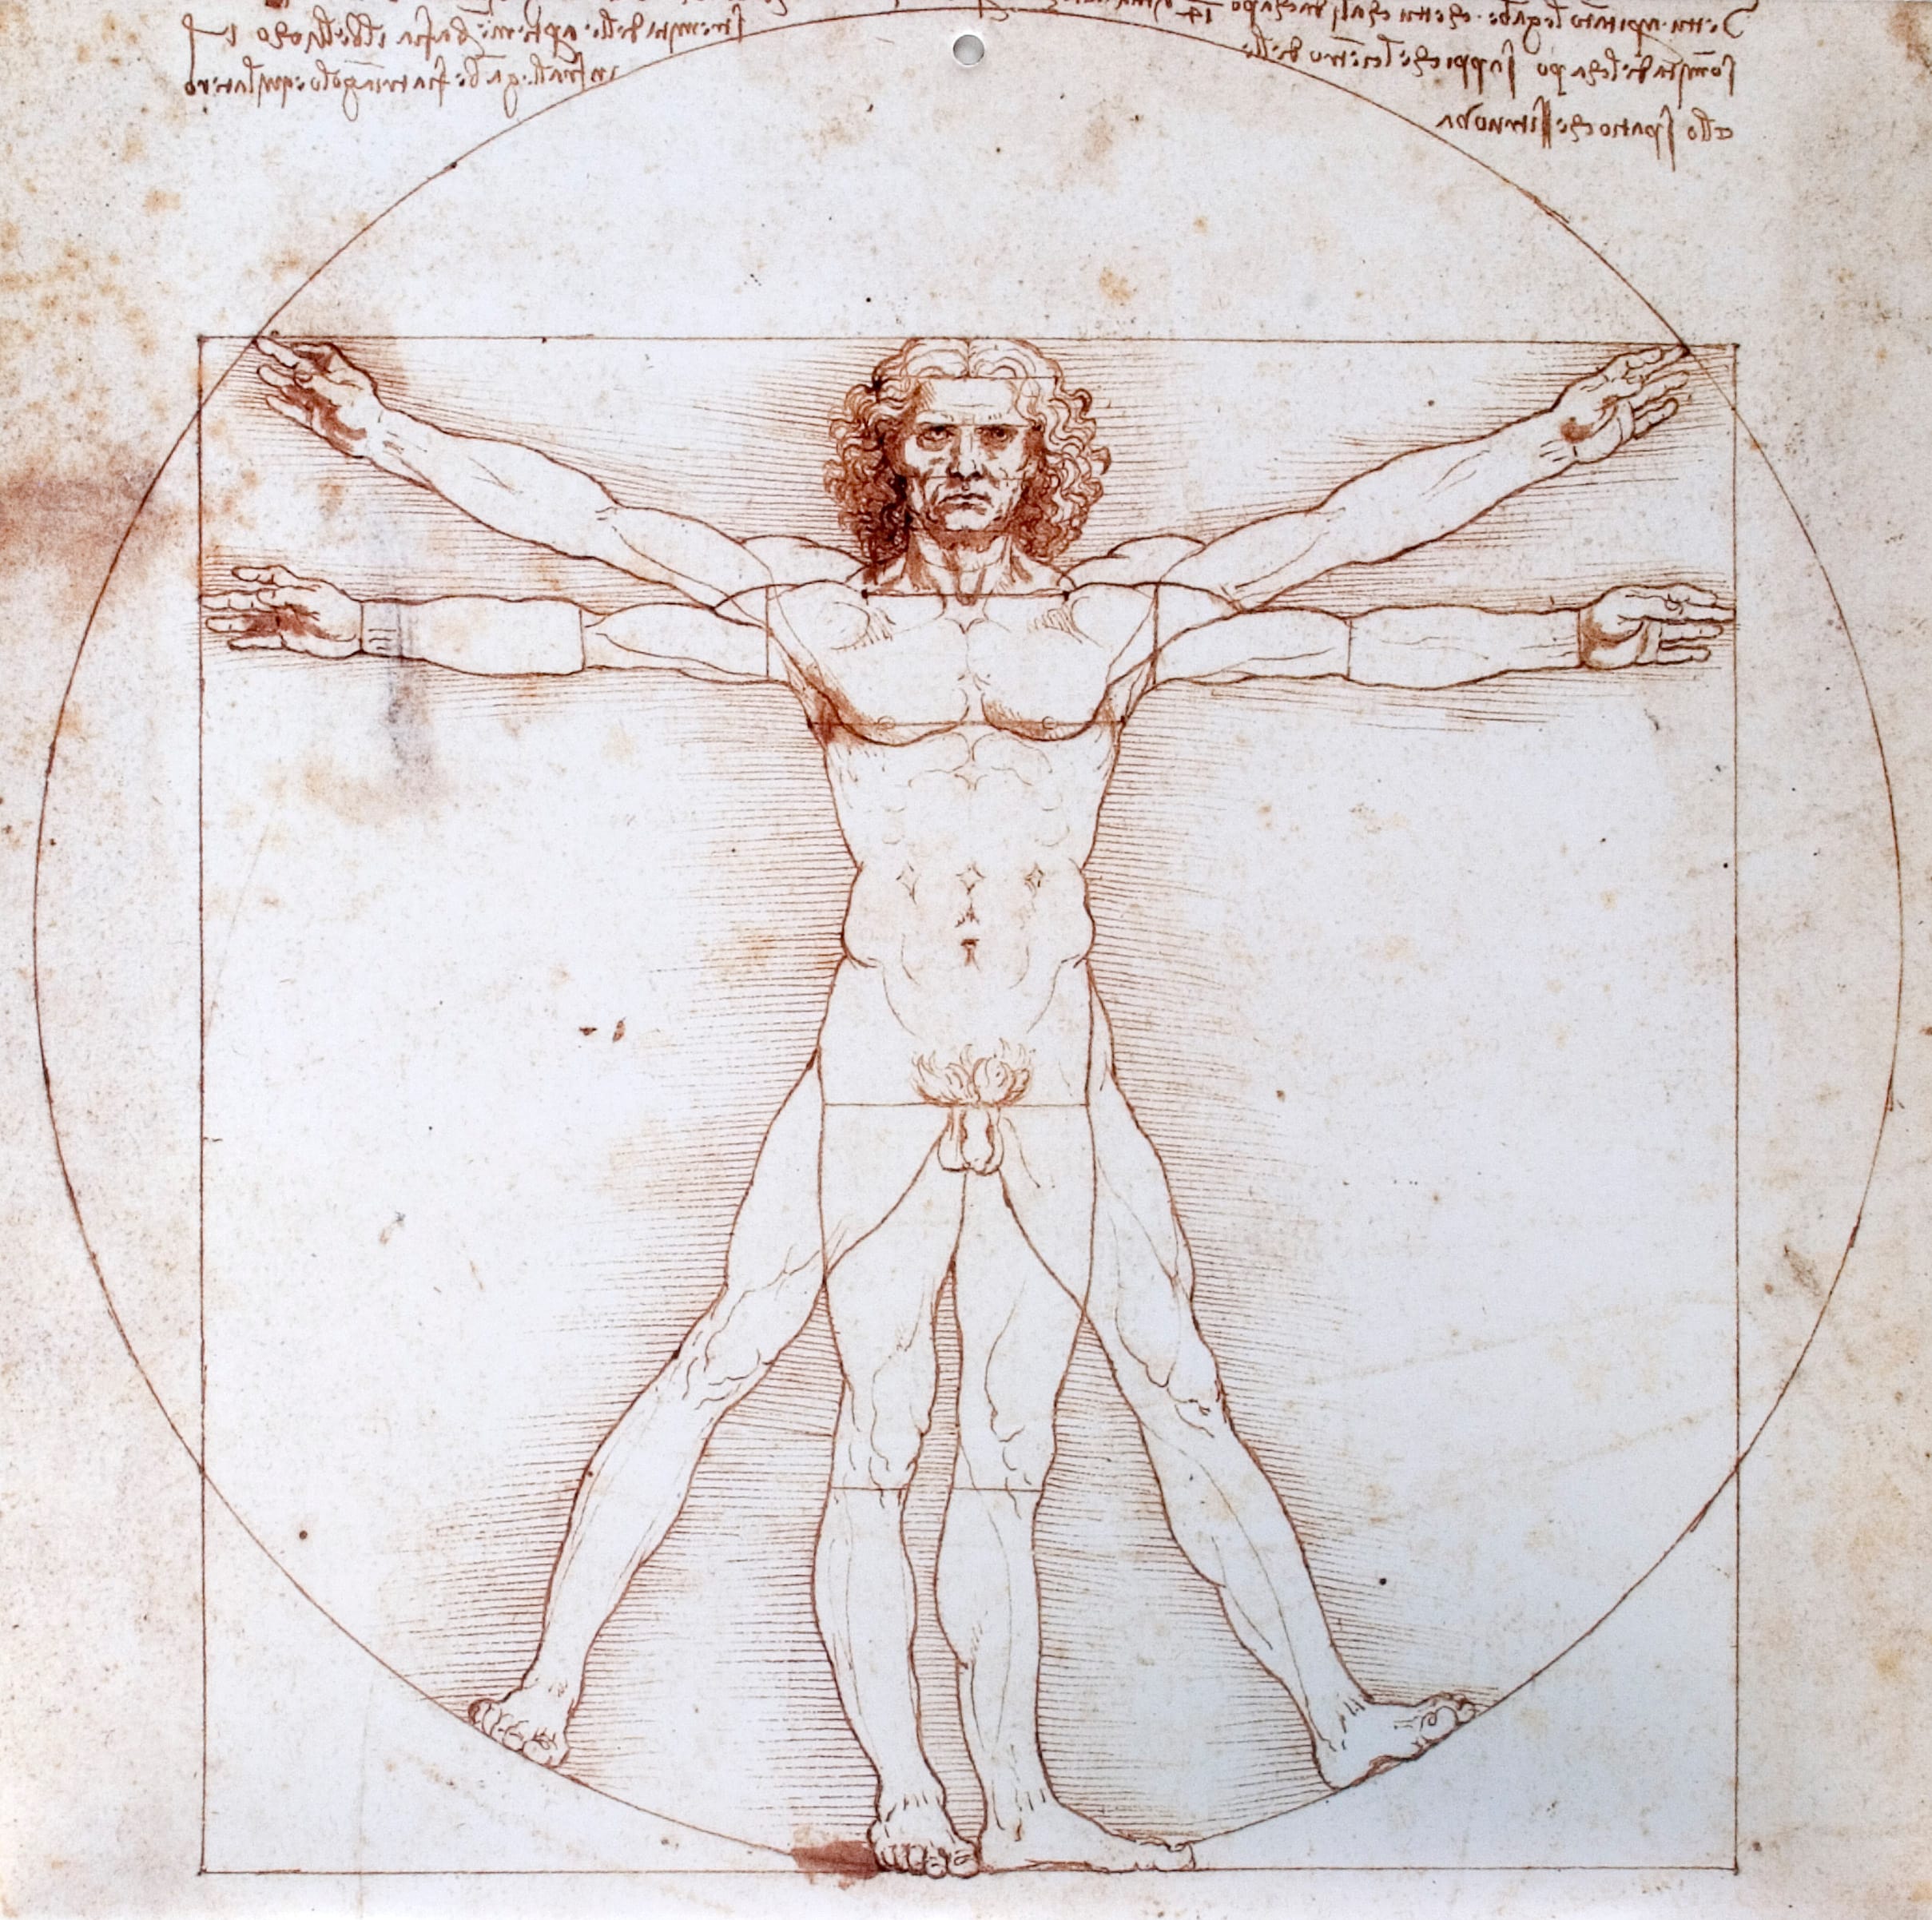 Leonardo da Vincis The Vitruvian Man (c.1490)